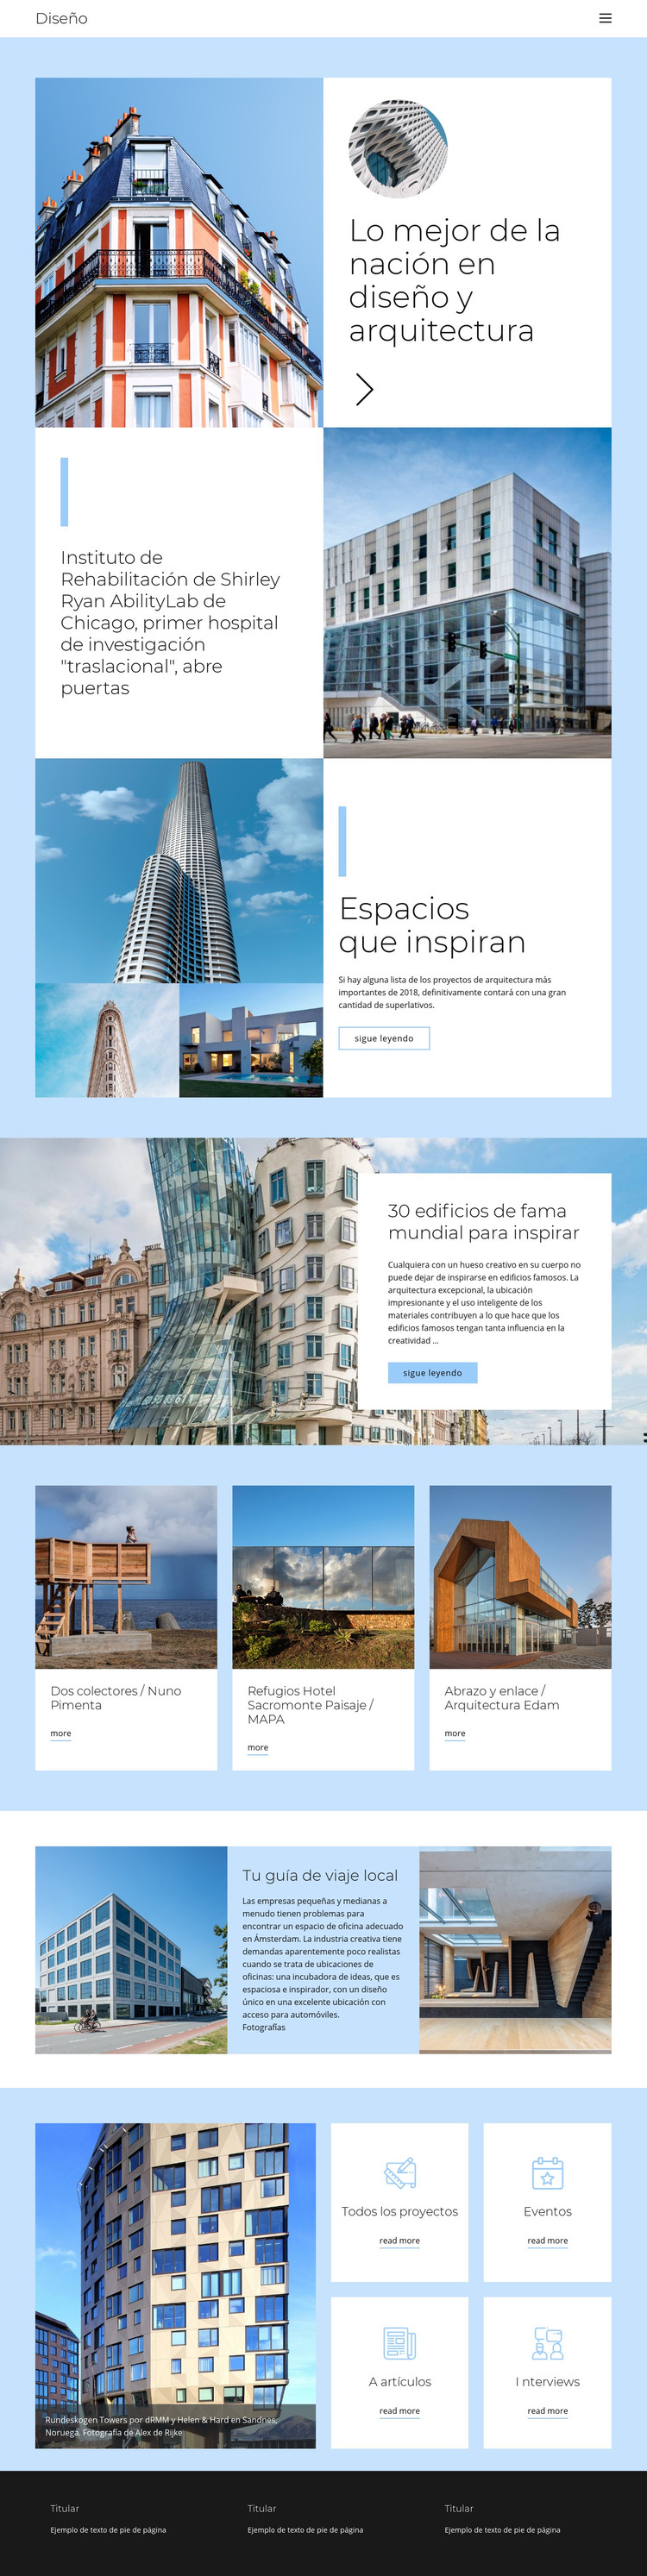 Guía de arquitectura de la ciudad Plantilla HTML